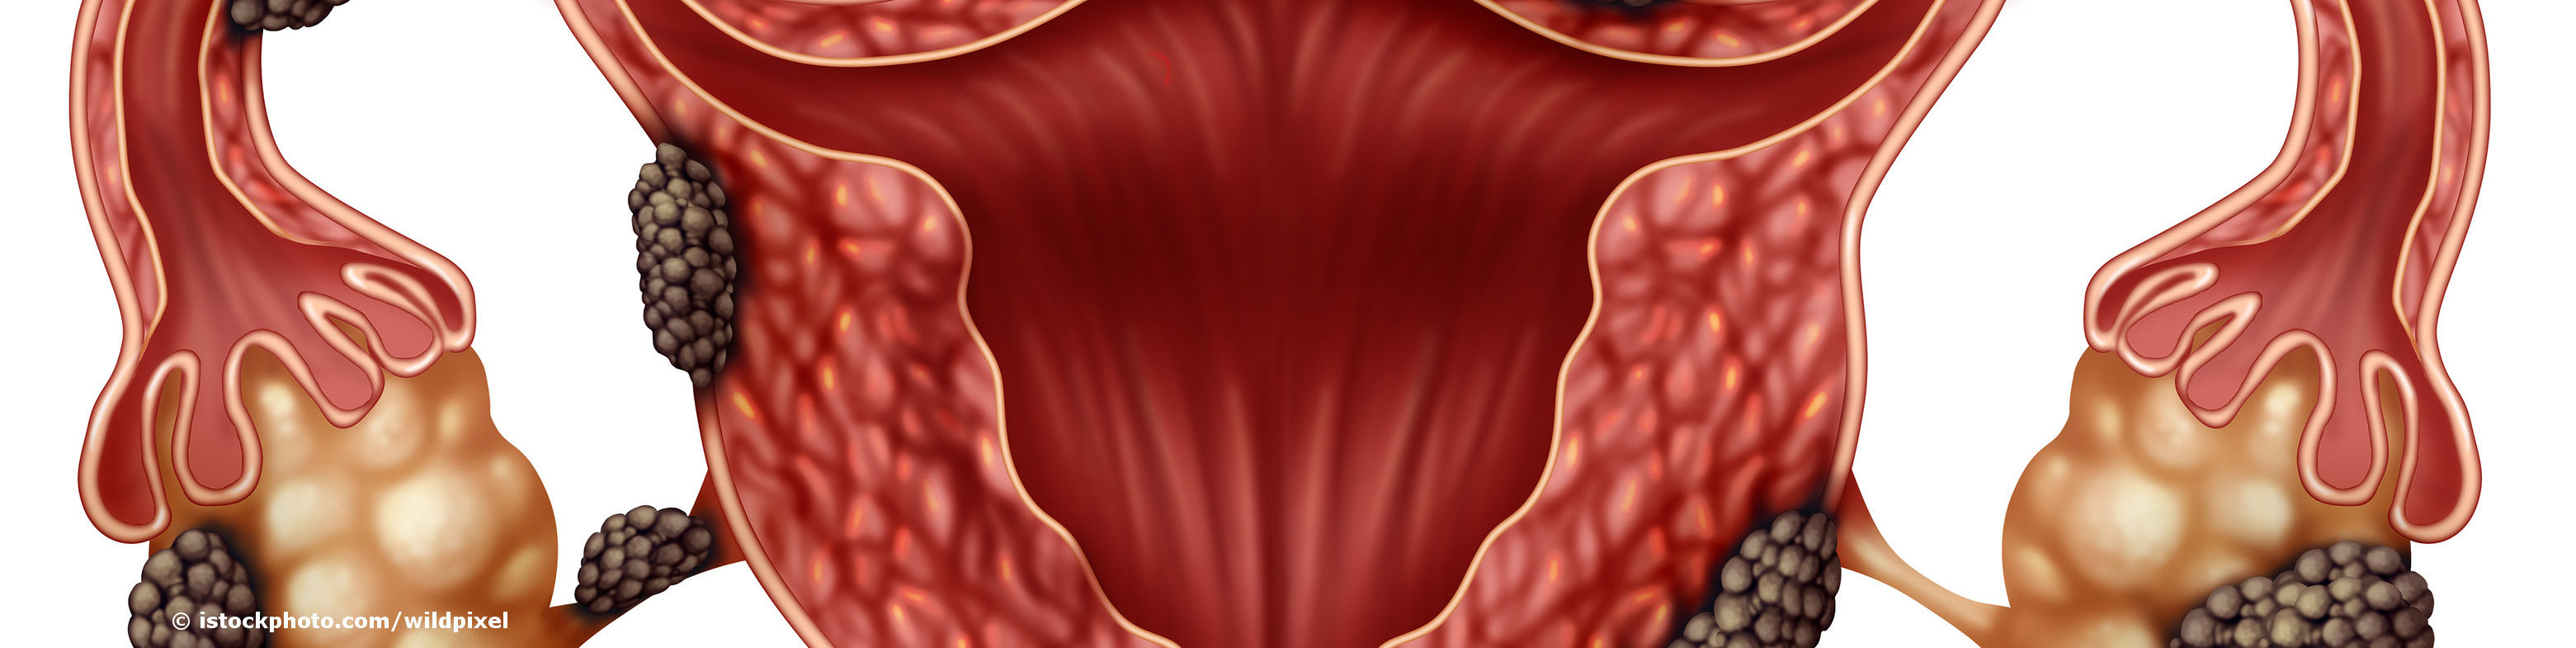 Gebärmutter (Uterus) mit Endometrioseherden in Eierstöcken, Eileitern und Gebärmutterwand.